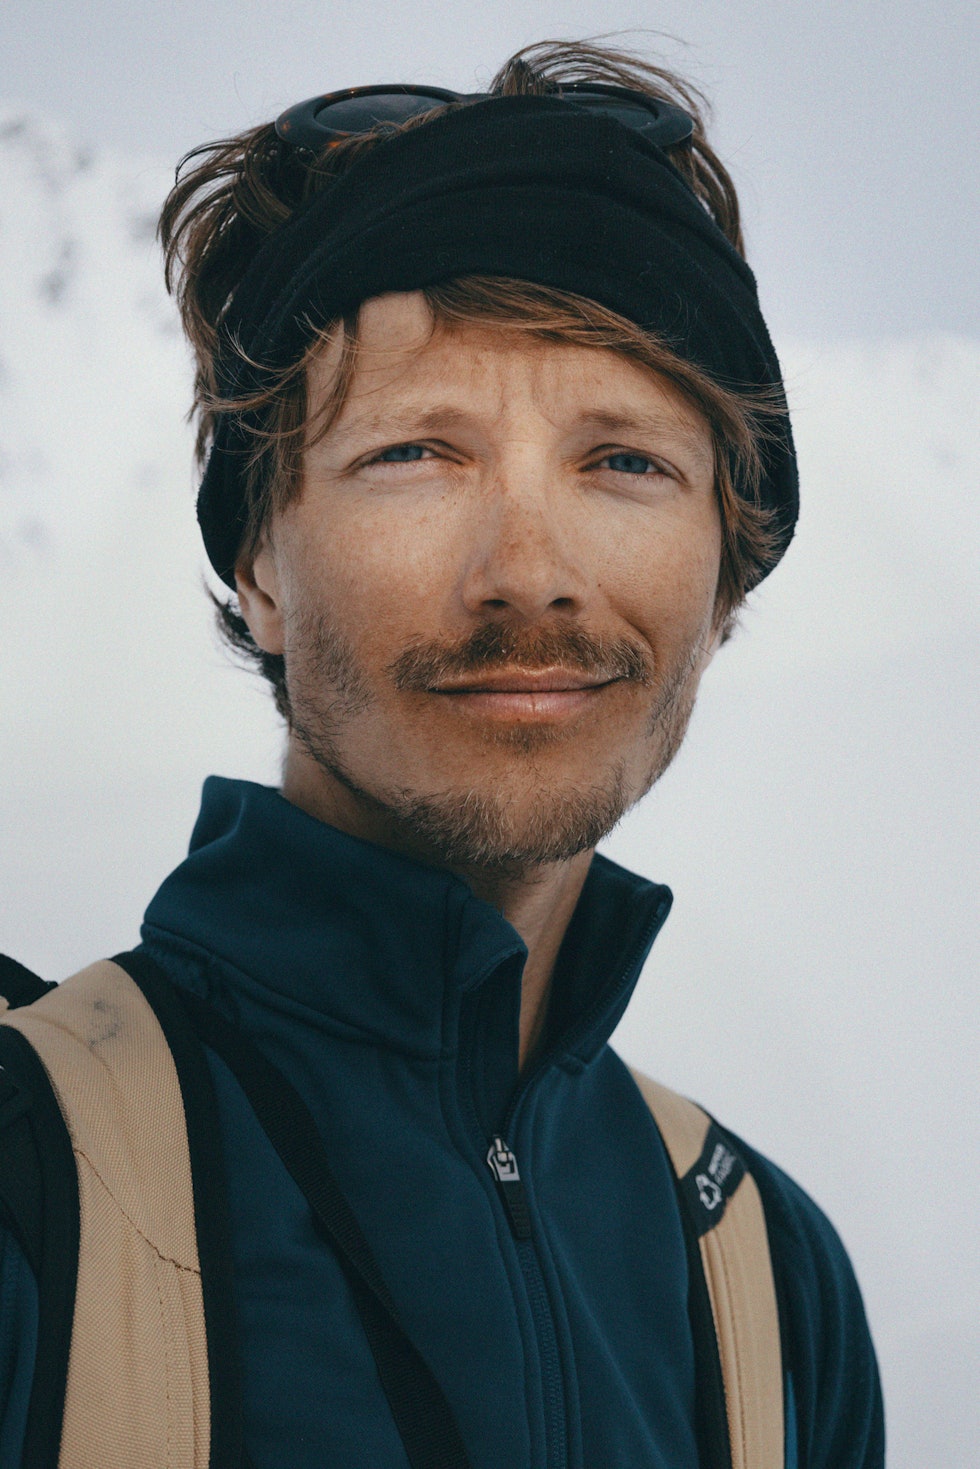 NORGESVENN: Jacob Wester (35) startet sin karriere som profesjonell skikjører tidlig på 2000-tallet. Etterhvert skiftet Jacob fokus mot frikjøring og bratte fjell. Foto: Sofia Sjöberg Wester